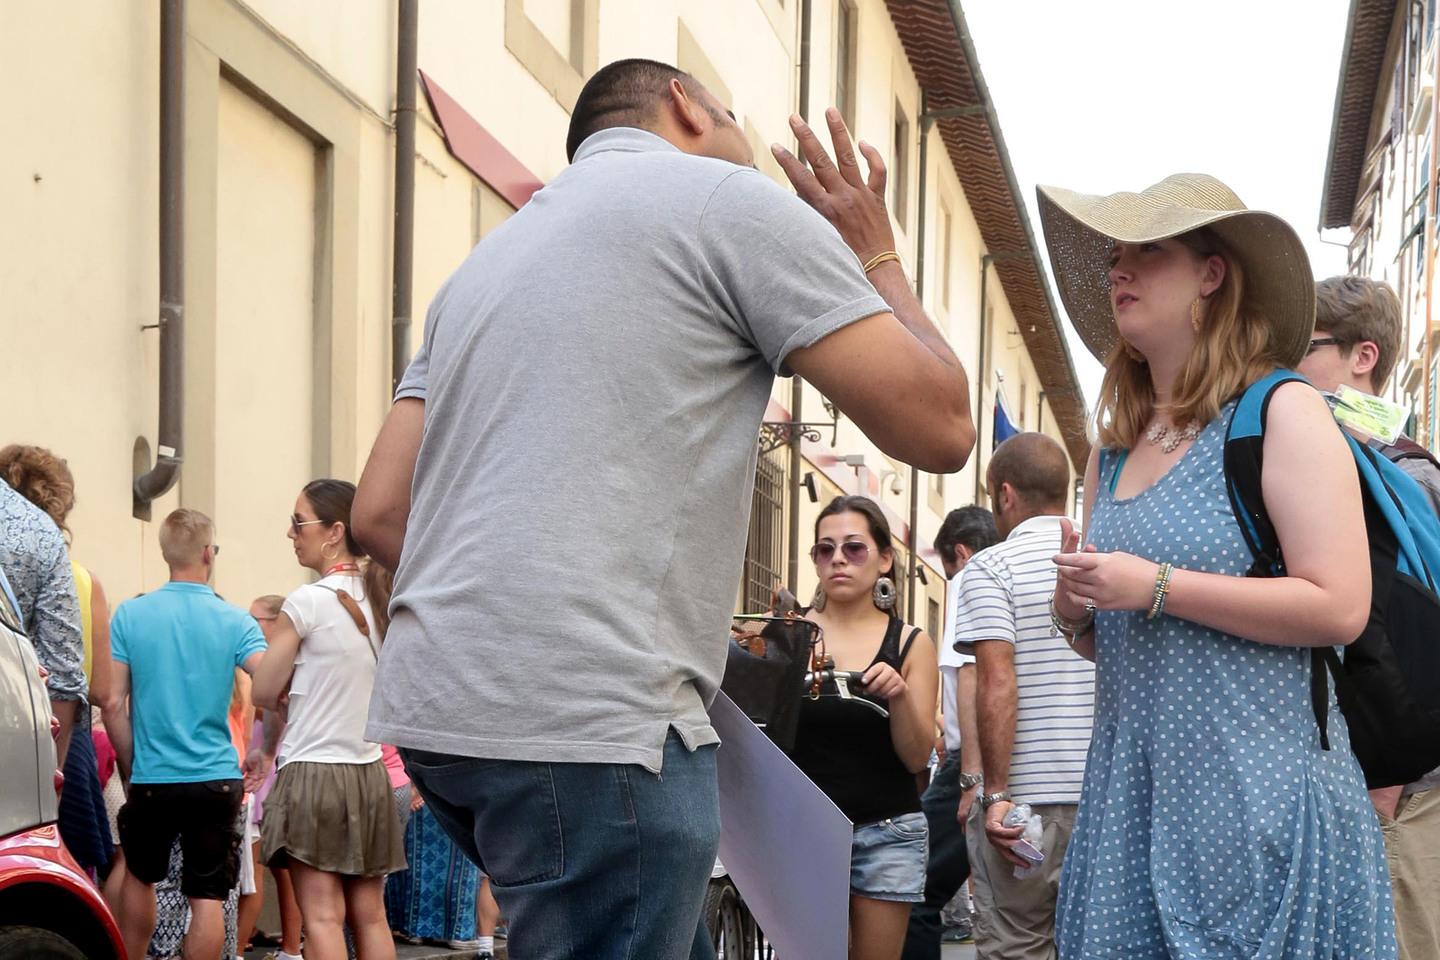 Le nuove offerte ai turisti: "Con 60 euro giri e bevi fra i segreti di Firenze". E il trash diventa business